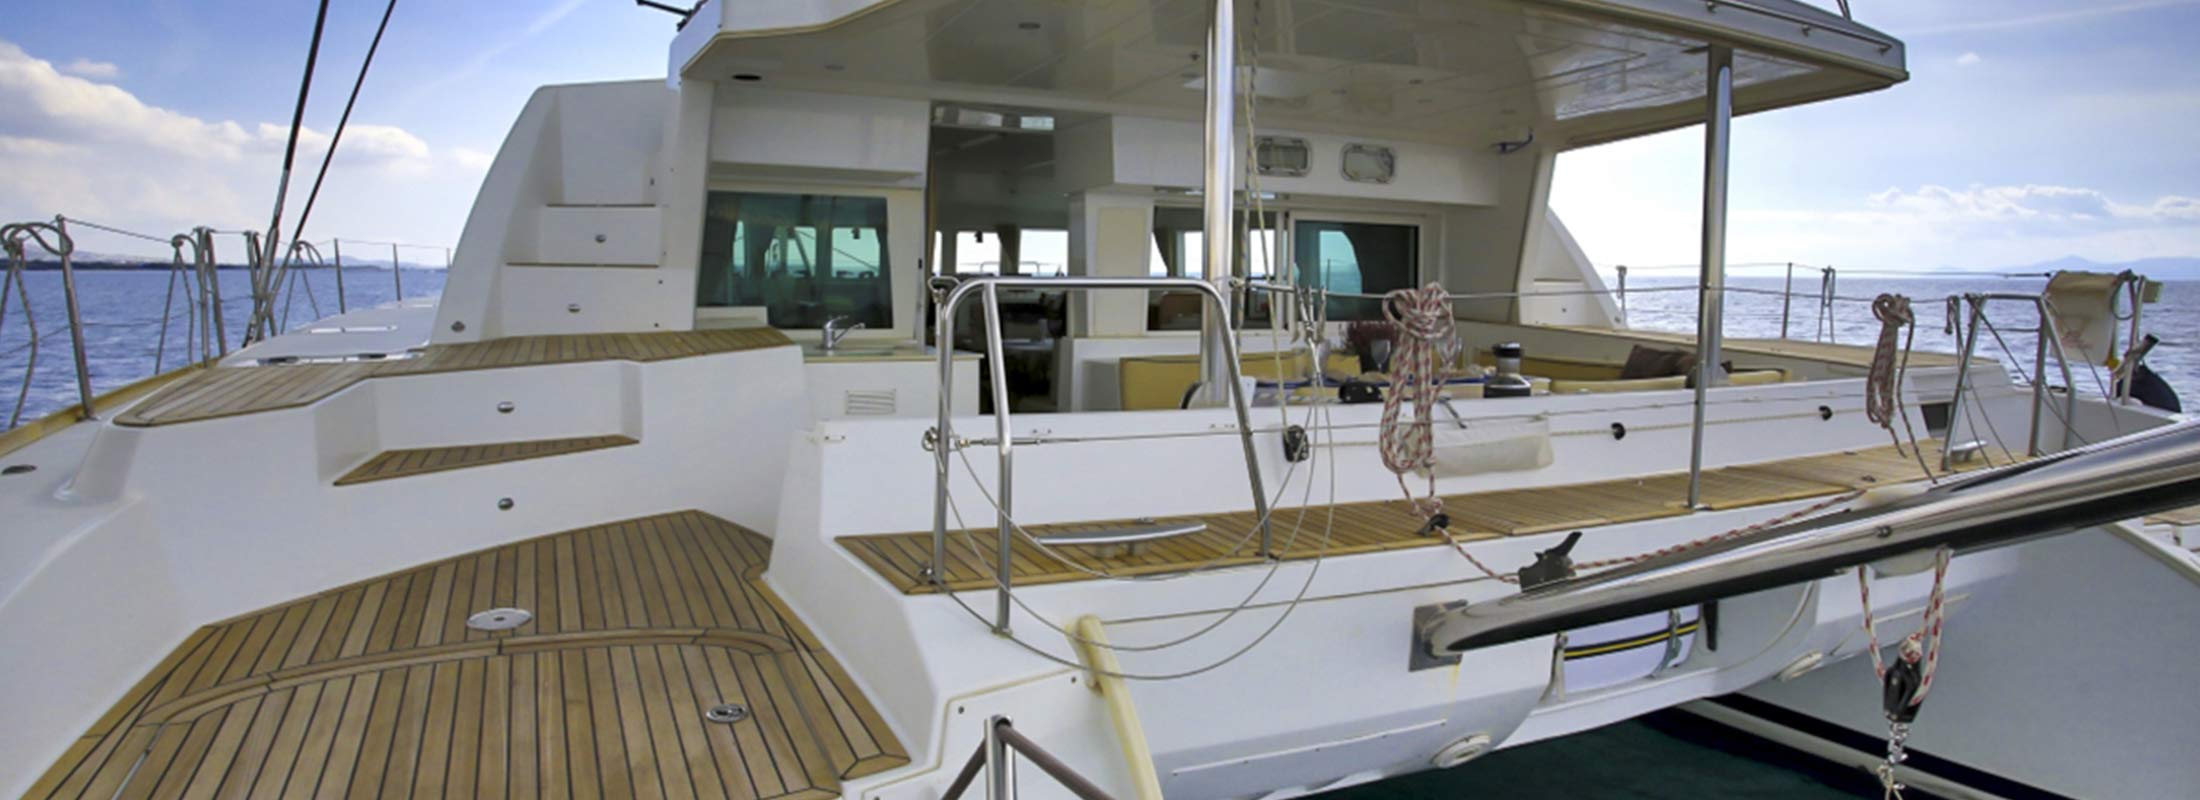 Opptur Sailing Yacht for Charter Mediterranean slider 2